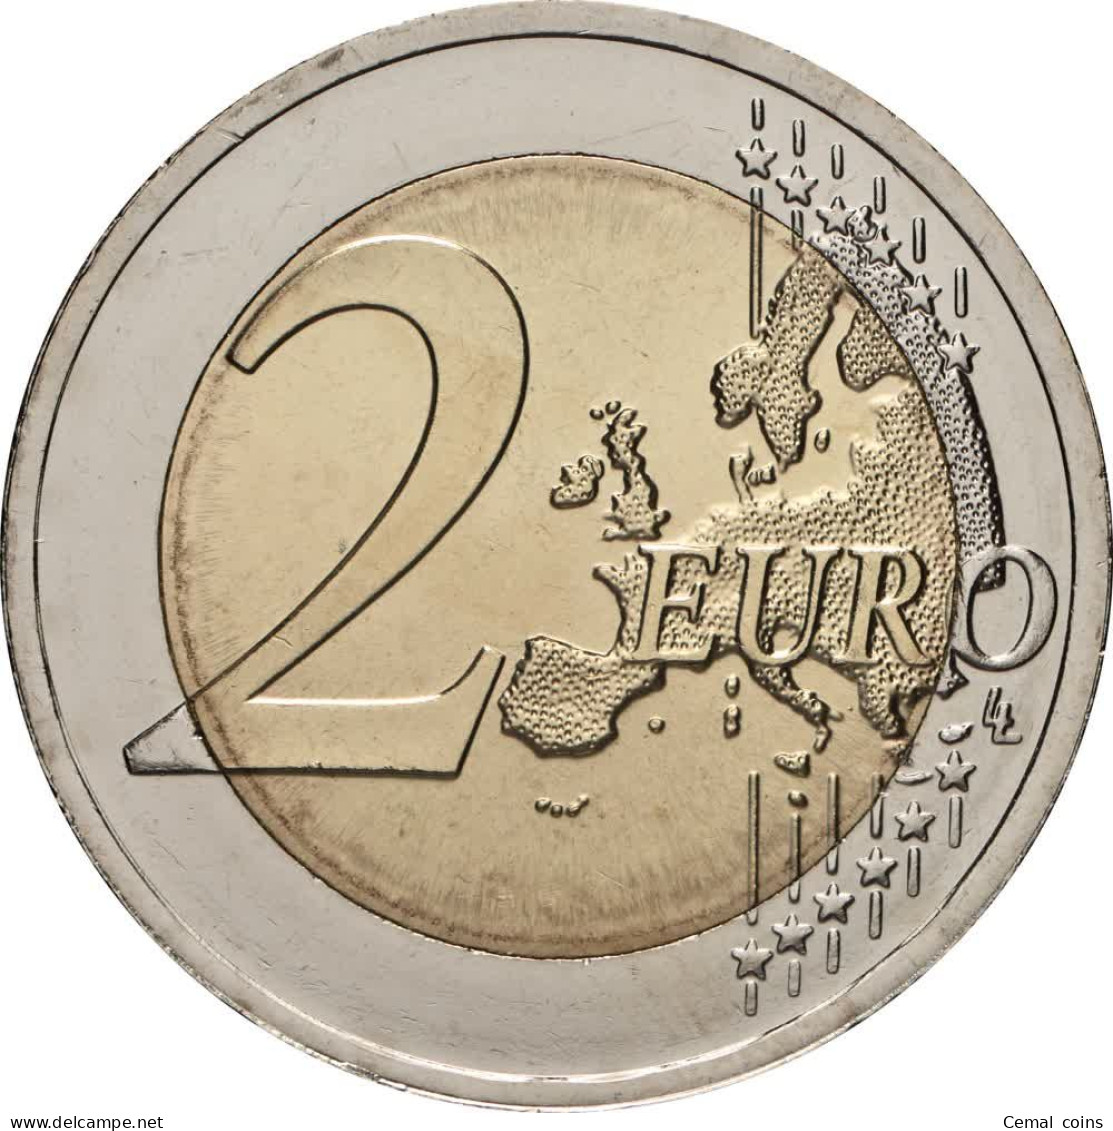 2 Euro 2021 Lithuania Coin - Dzūkija. - Lituanie